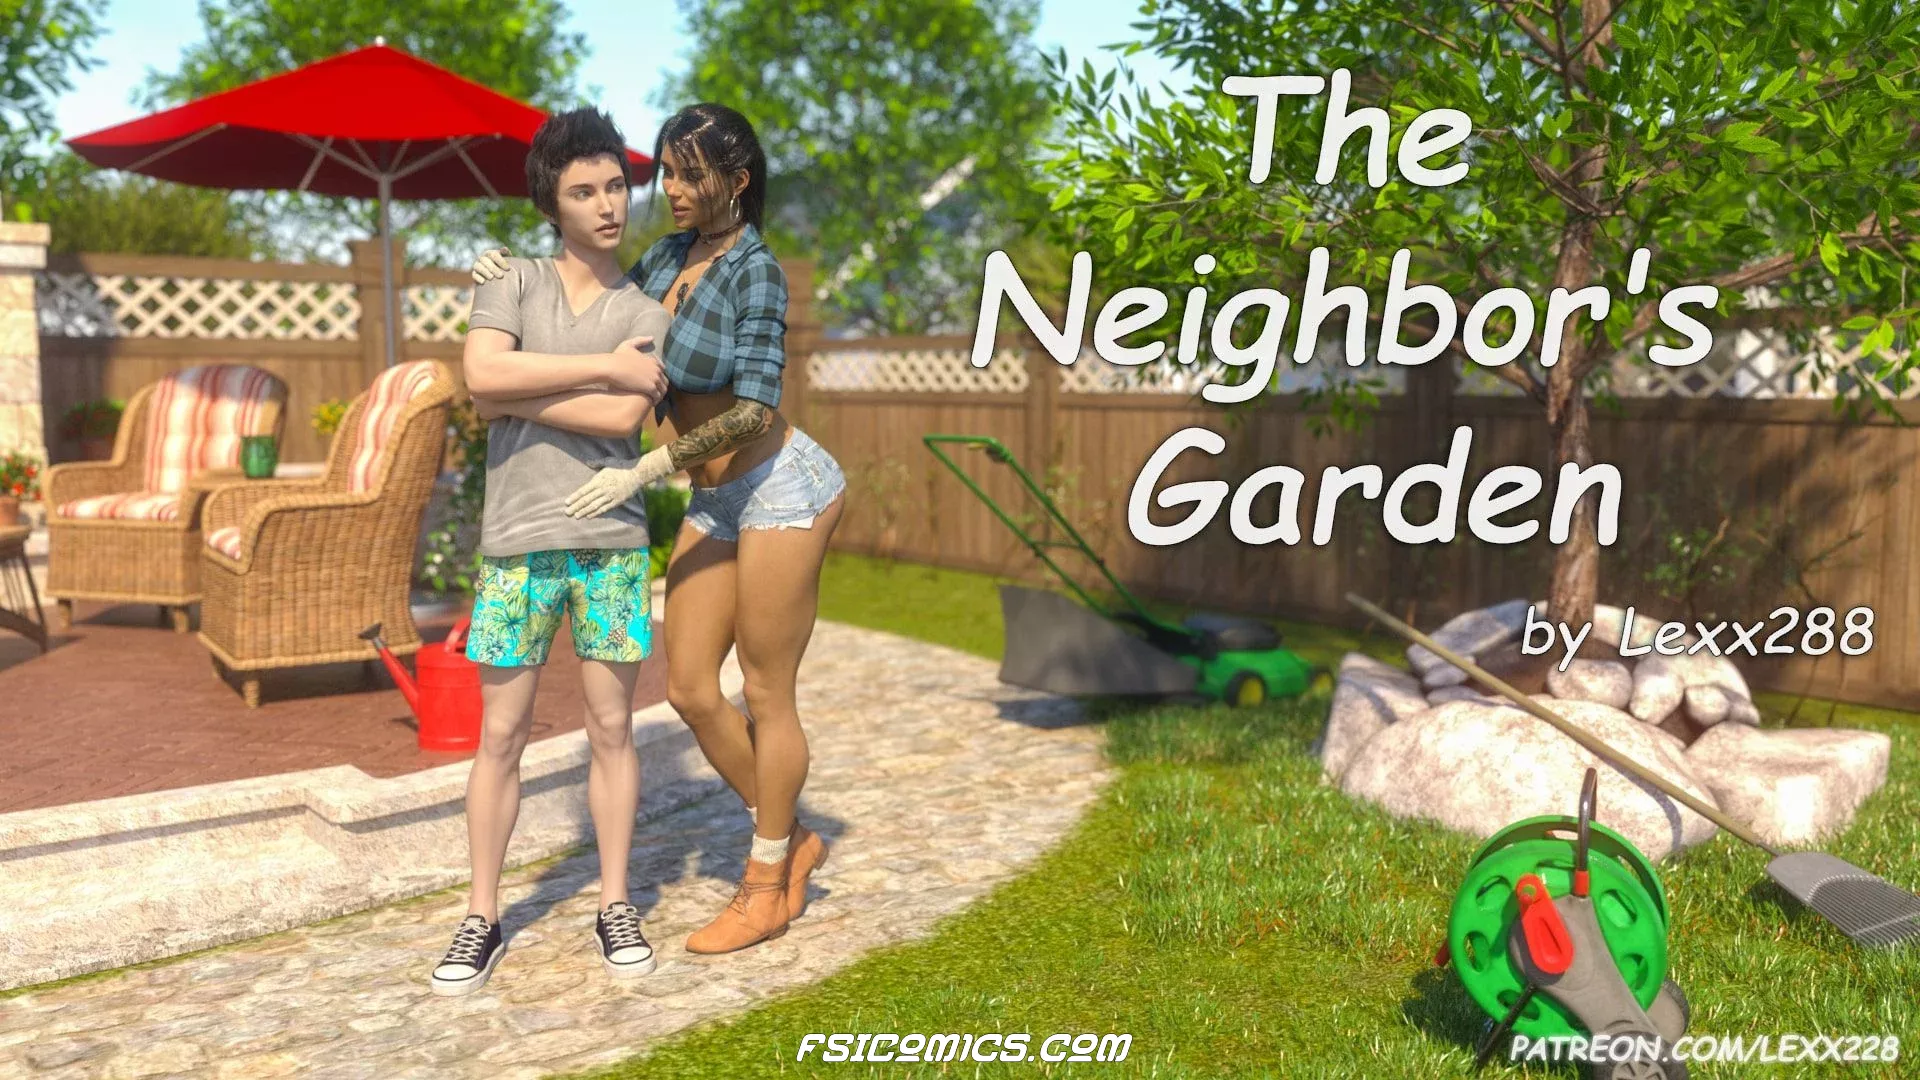 The Neighbors Garden Chapter 1 - Lexx228 - 3 - FSIComics